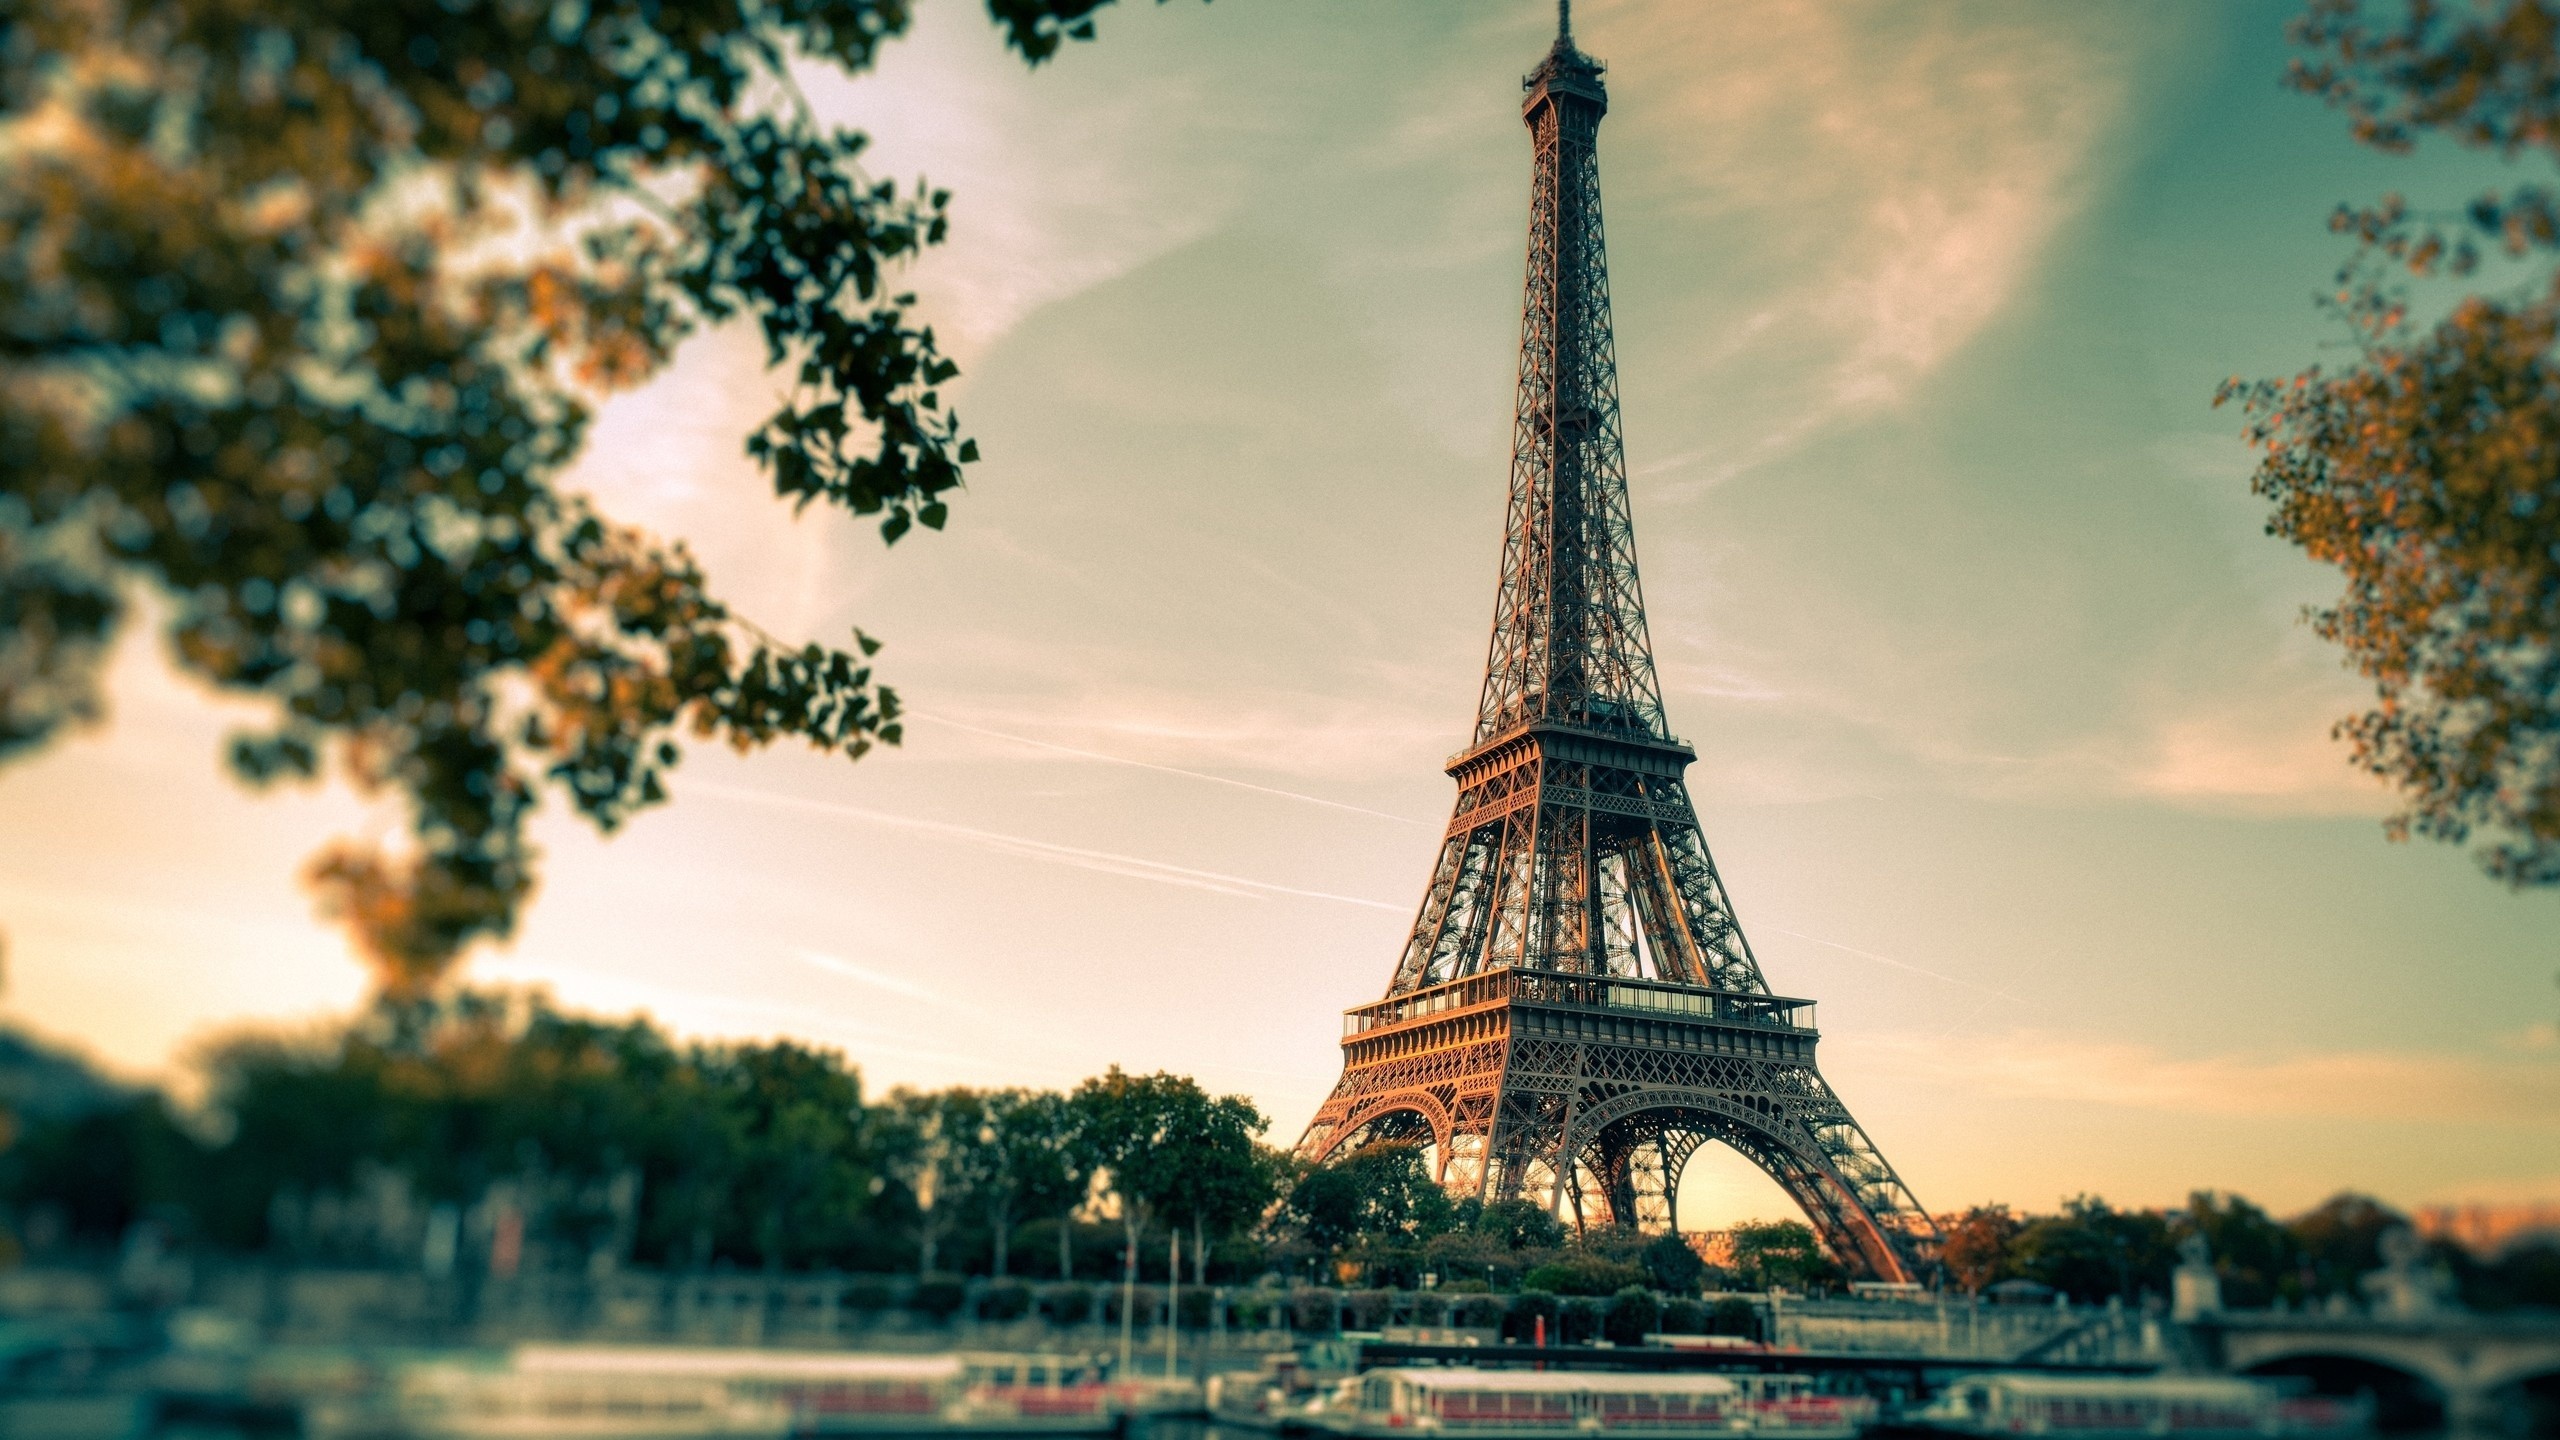 2560x1440  Eiffel Tower Paris City Wallpaper PC #7106 Wallpaper | High  Resolution .